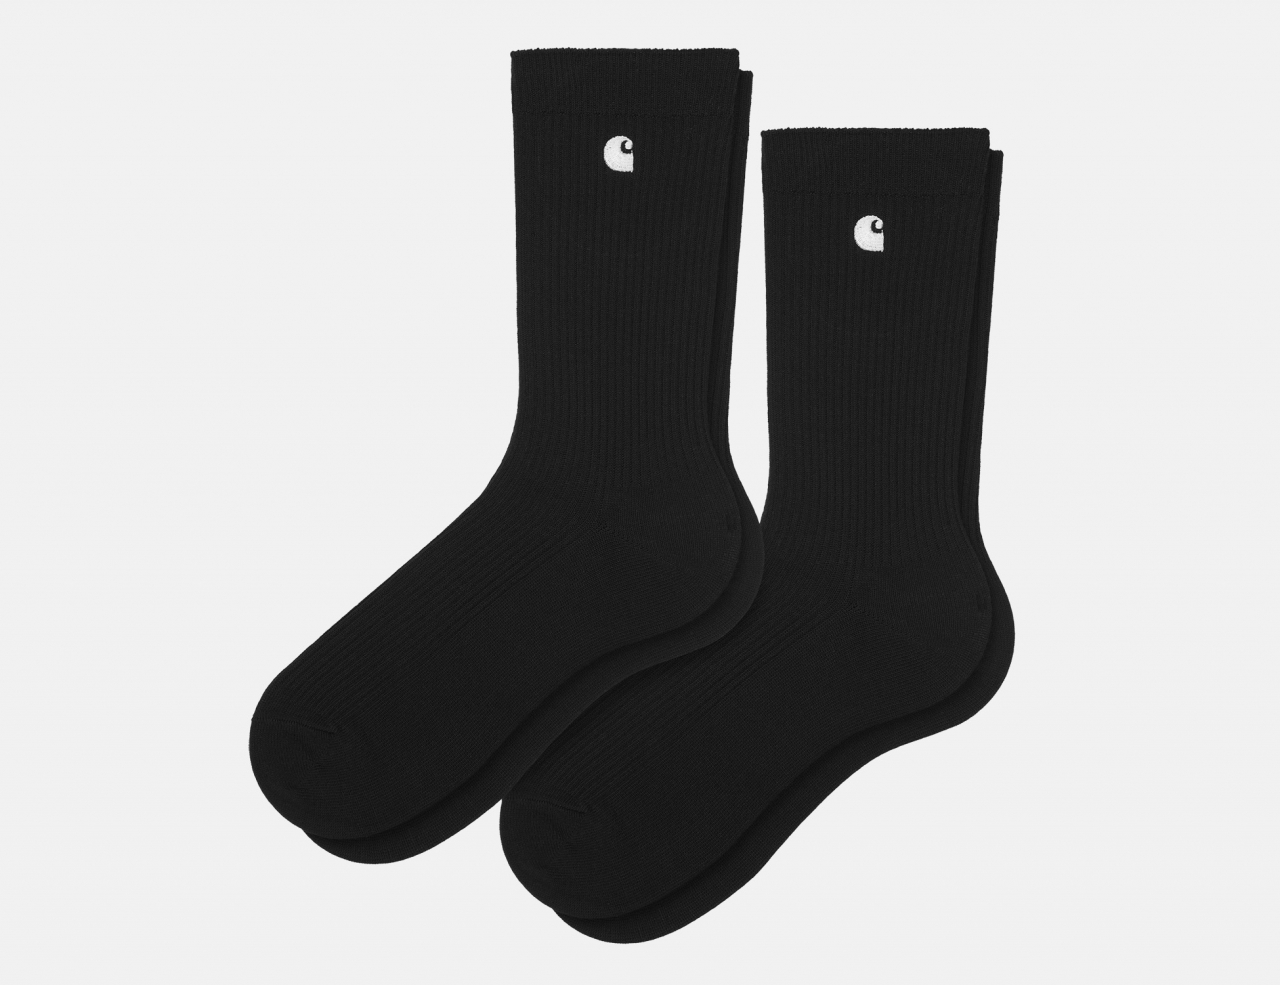 Carhartt WIP Madison Socks Pack - Black / White